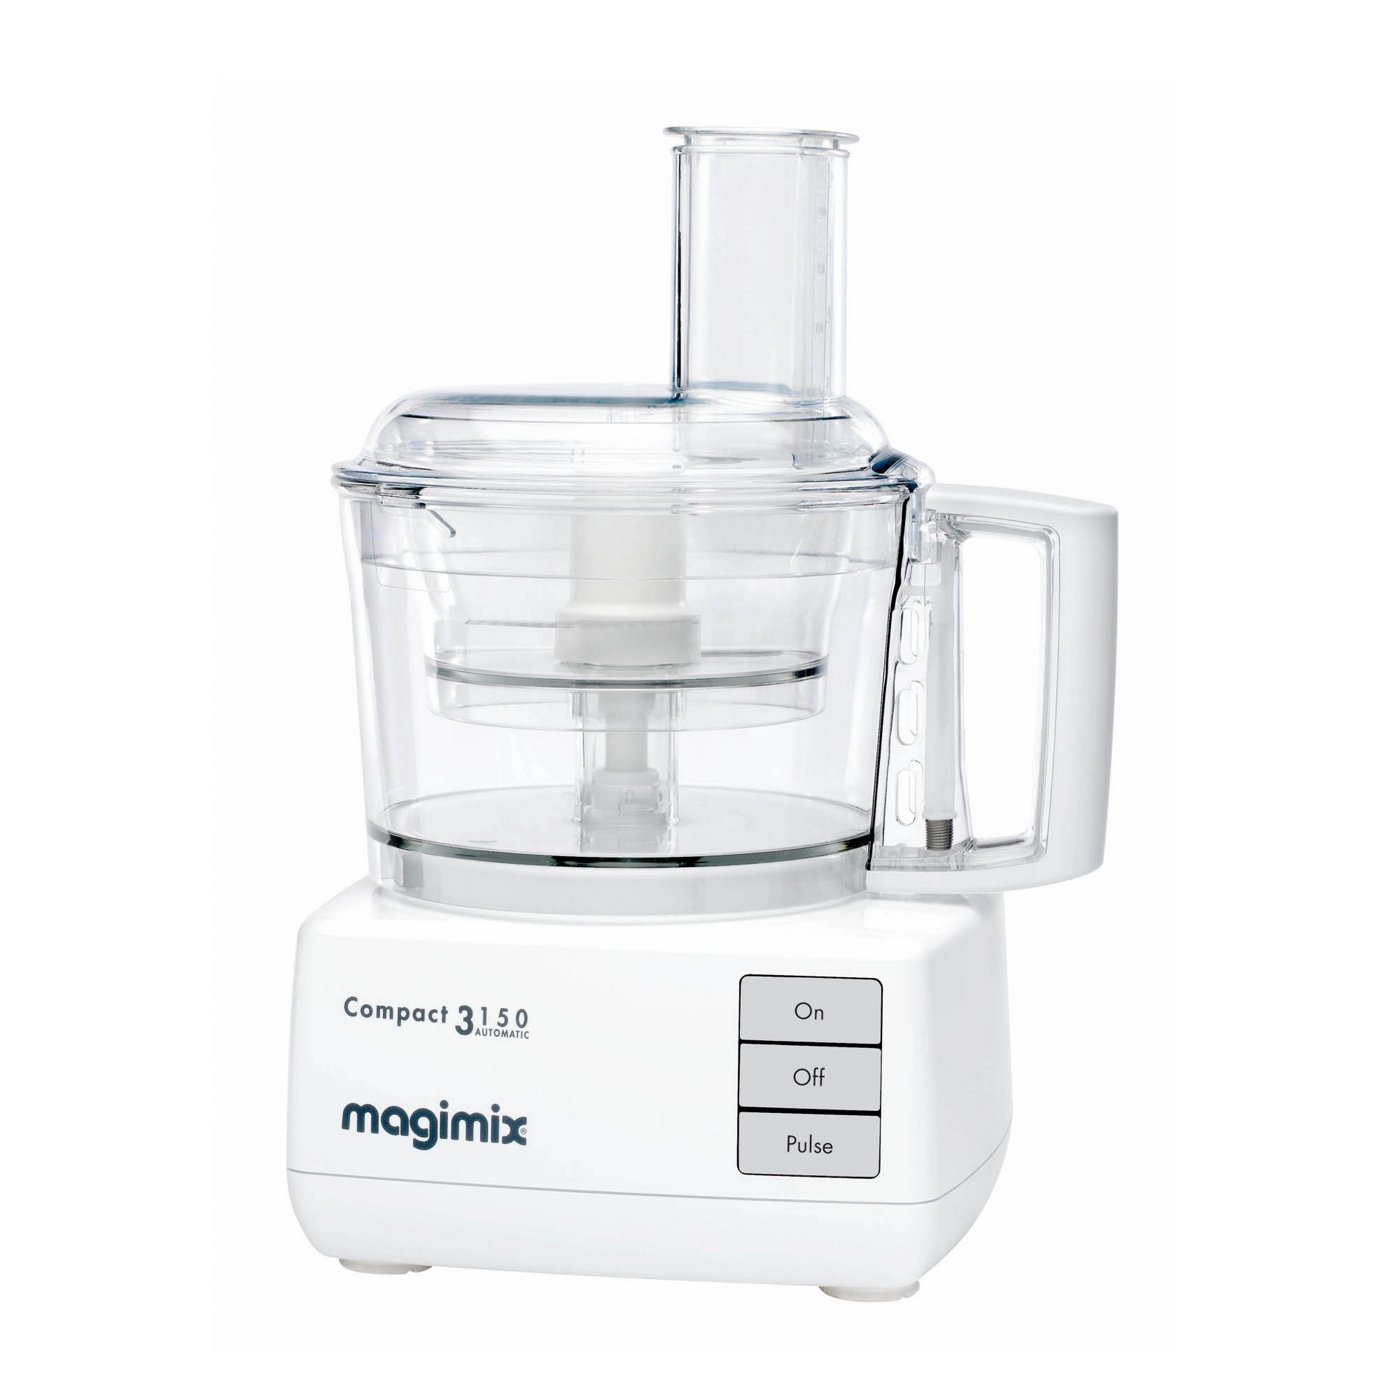 Magimix Magimix 3150 White food processor